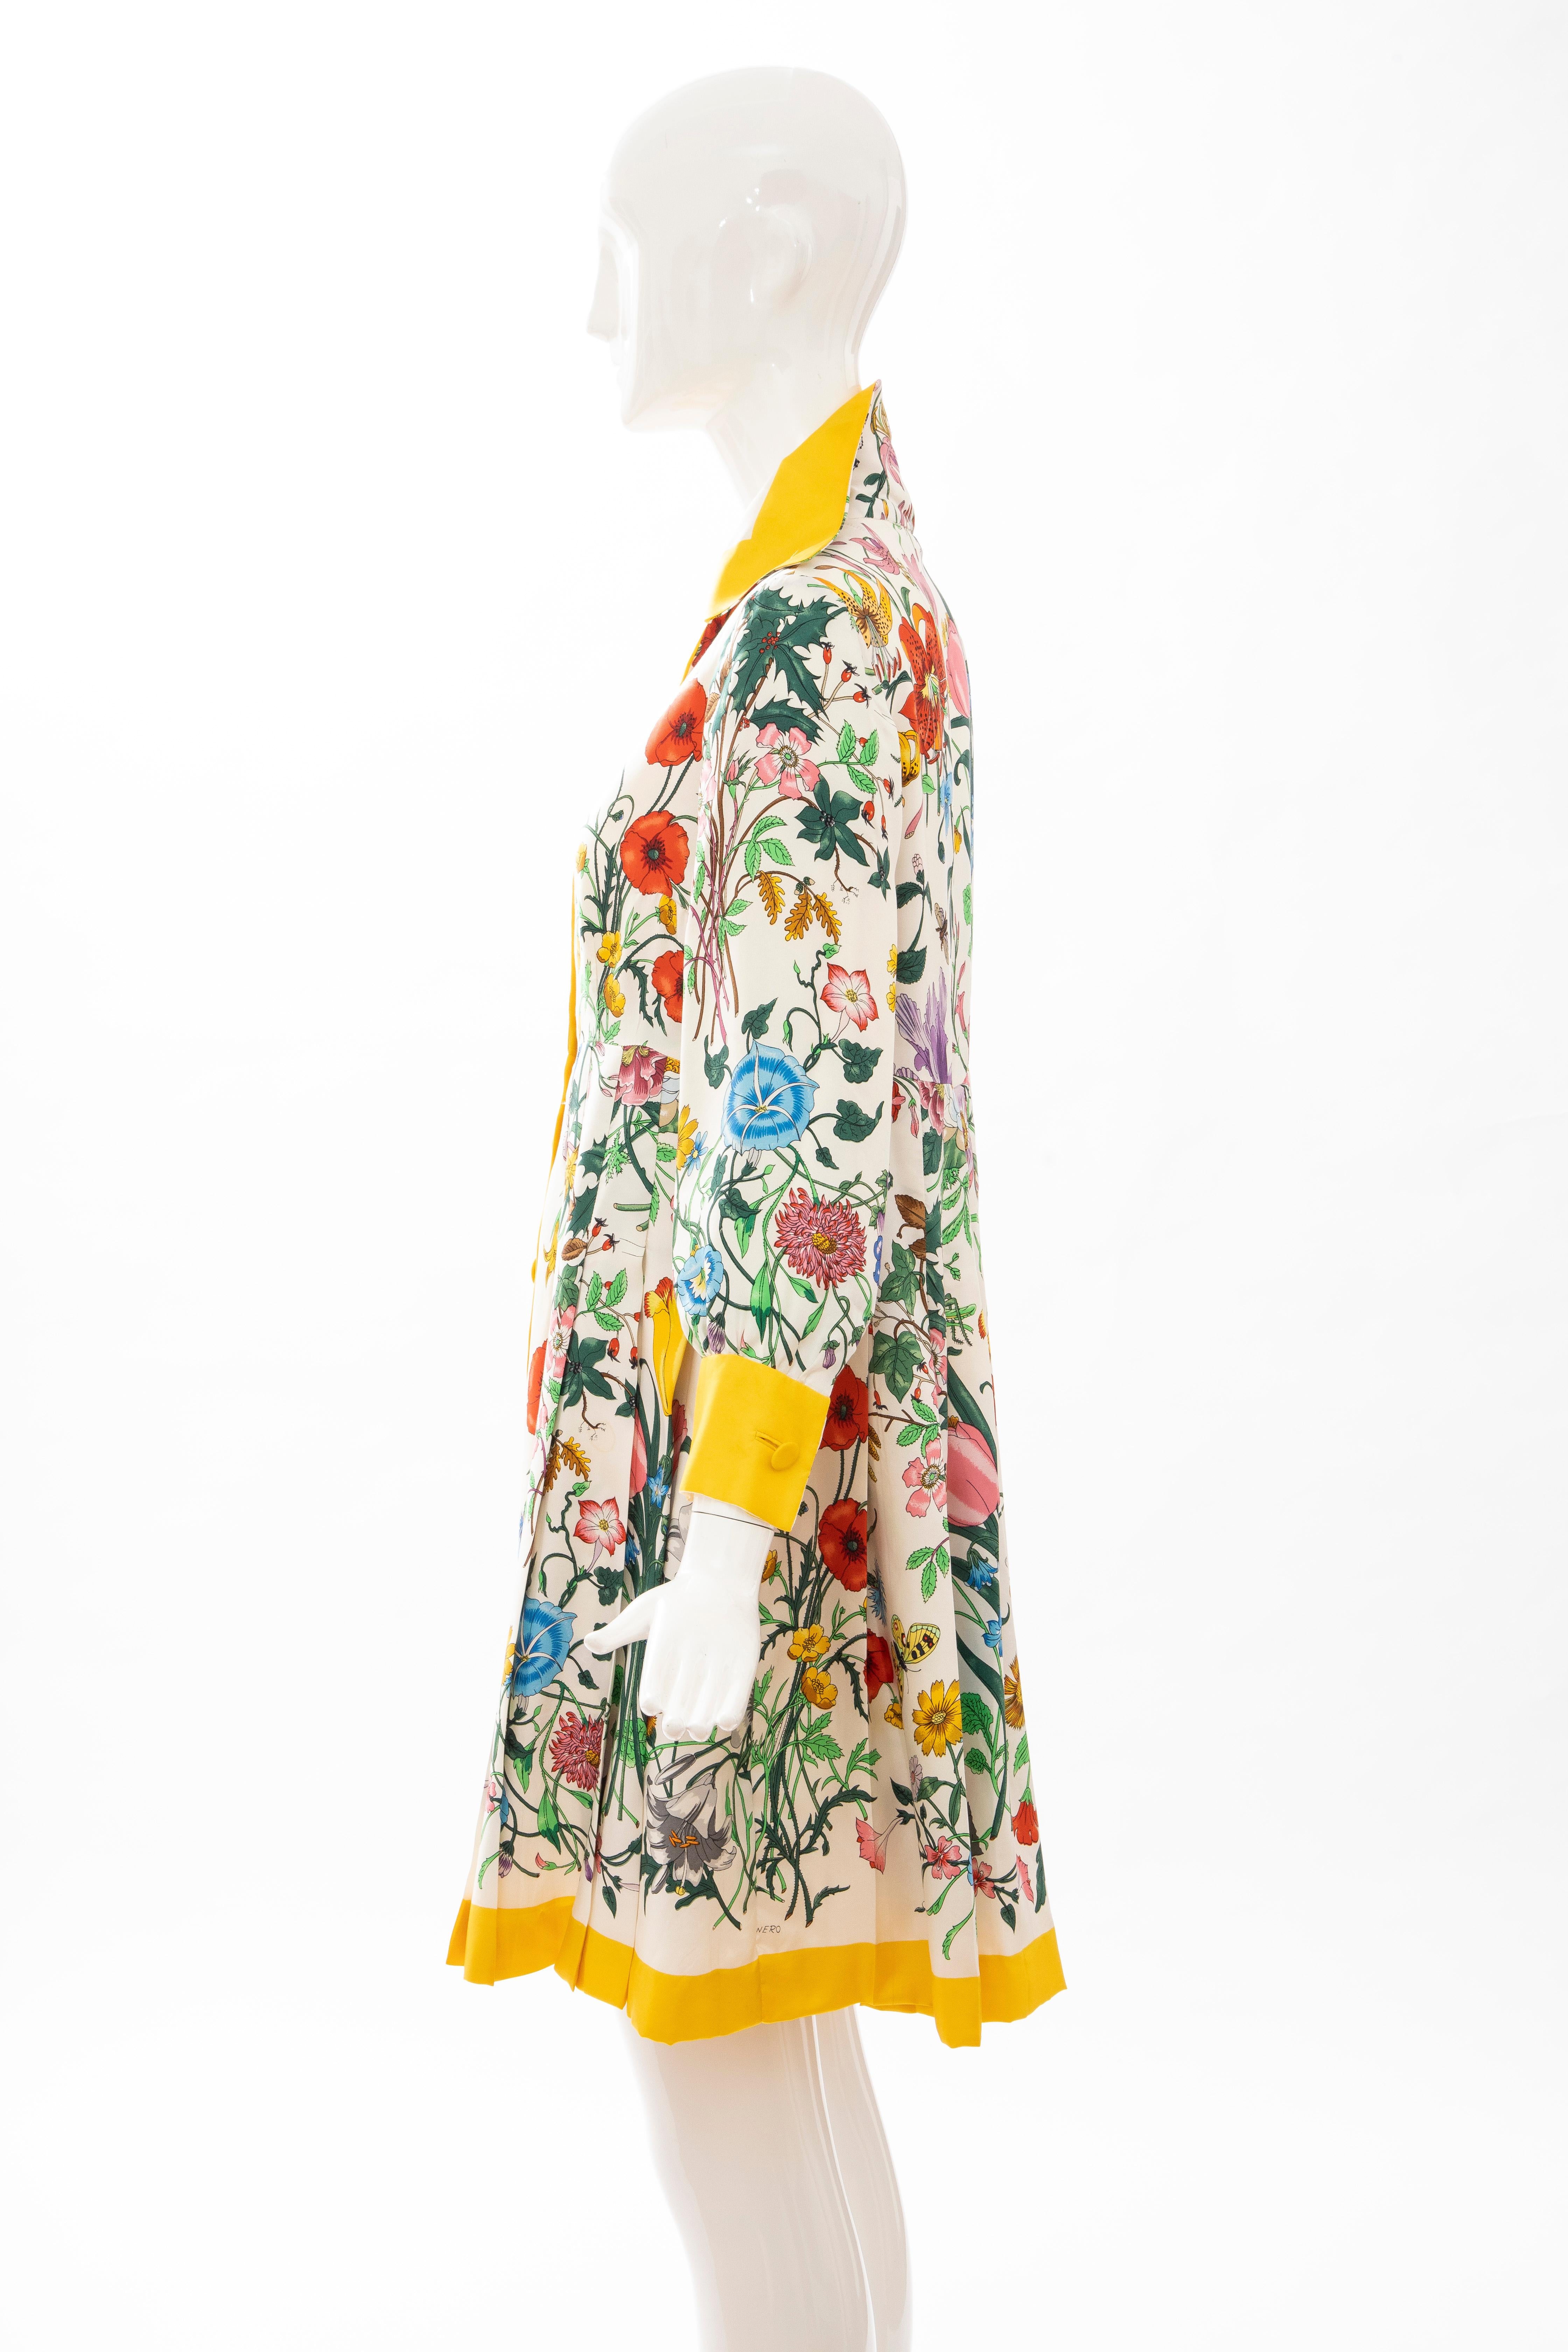 Gucci Vittorio Accornero Flora Fauna Screen Printed Silk Dress, Circa: 1970's 7